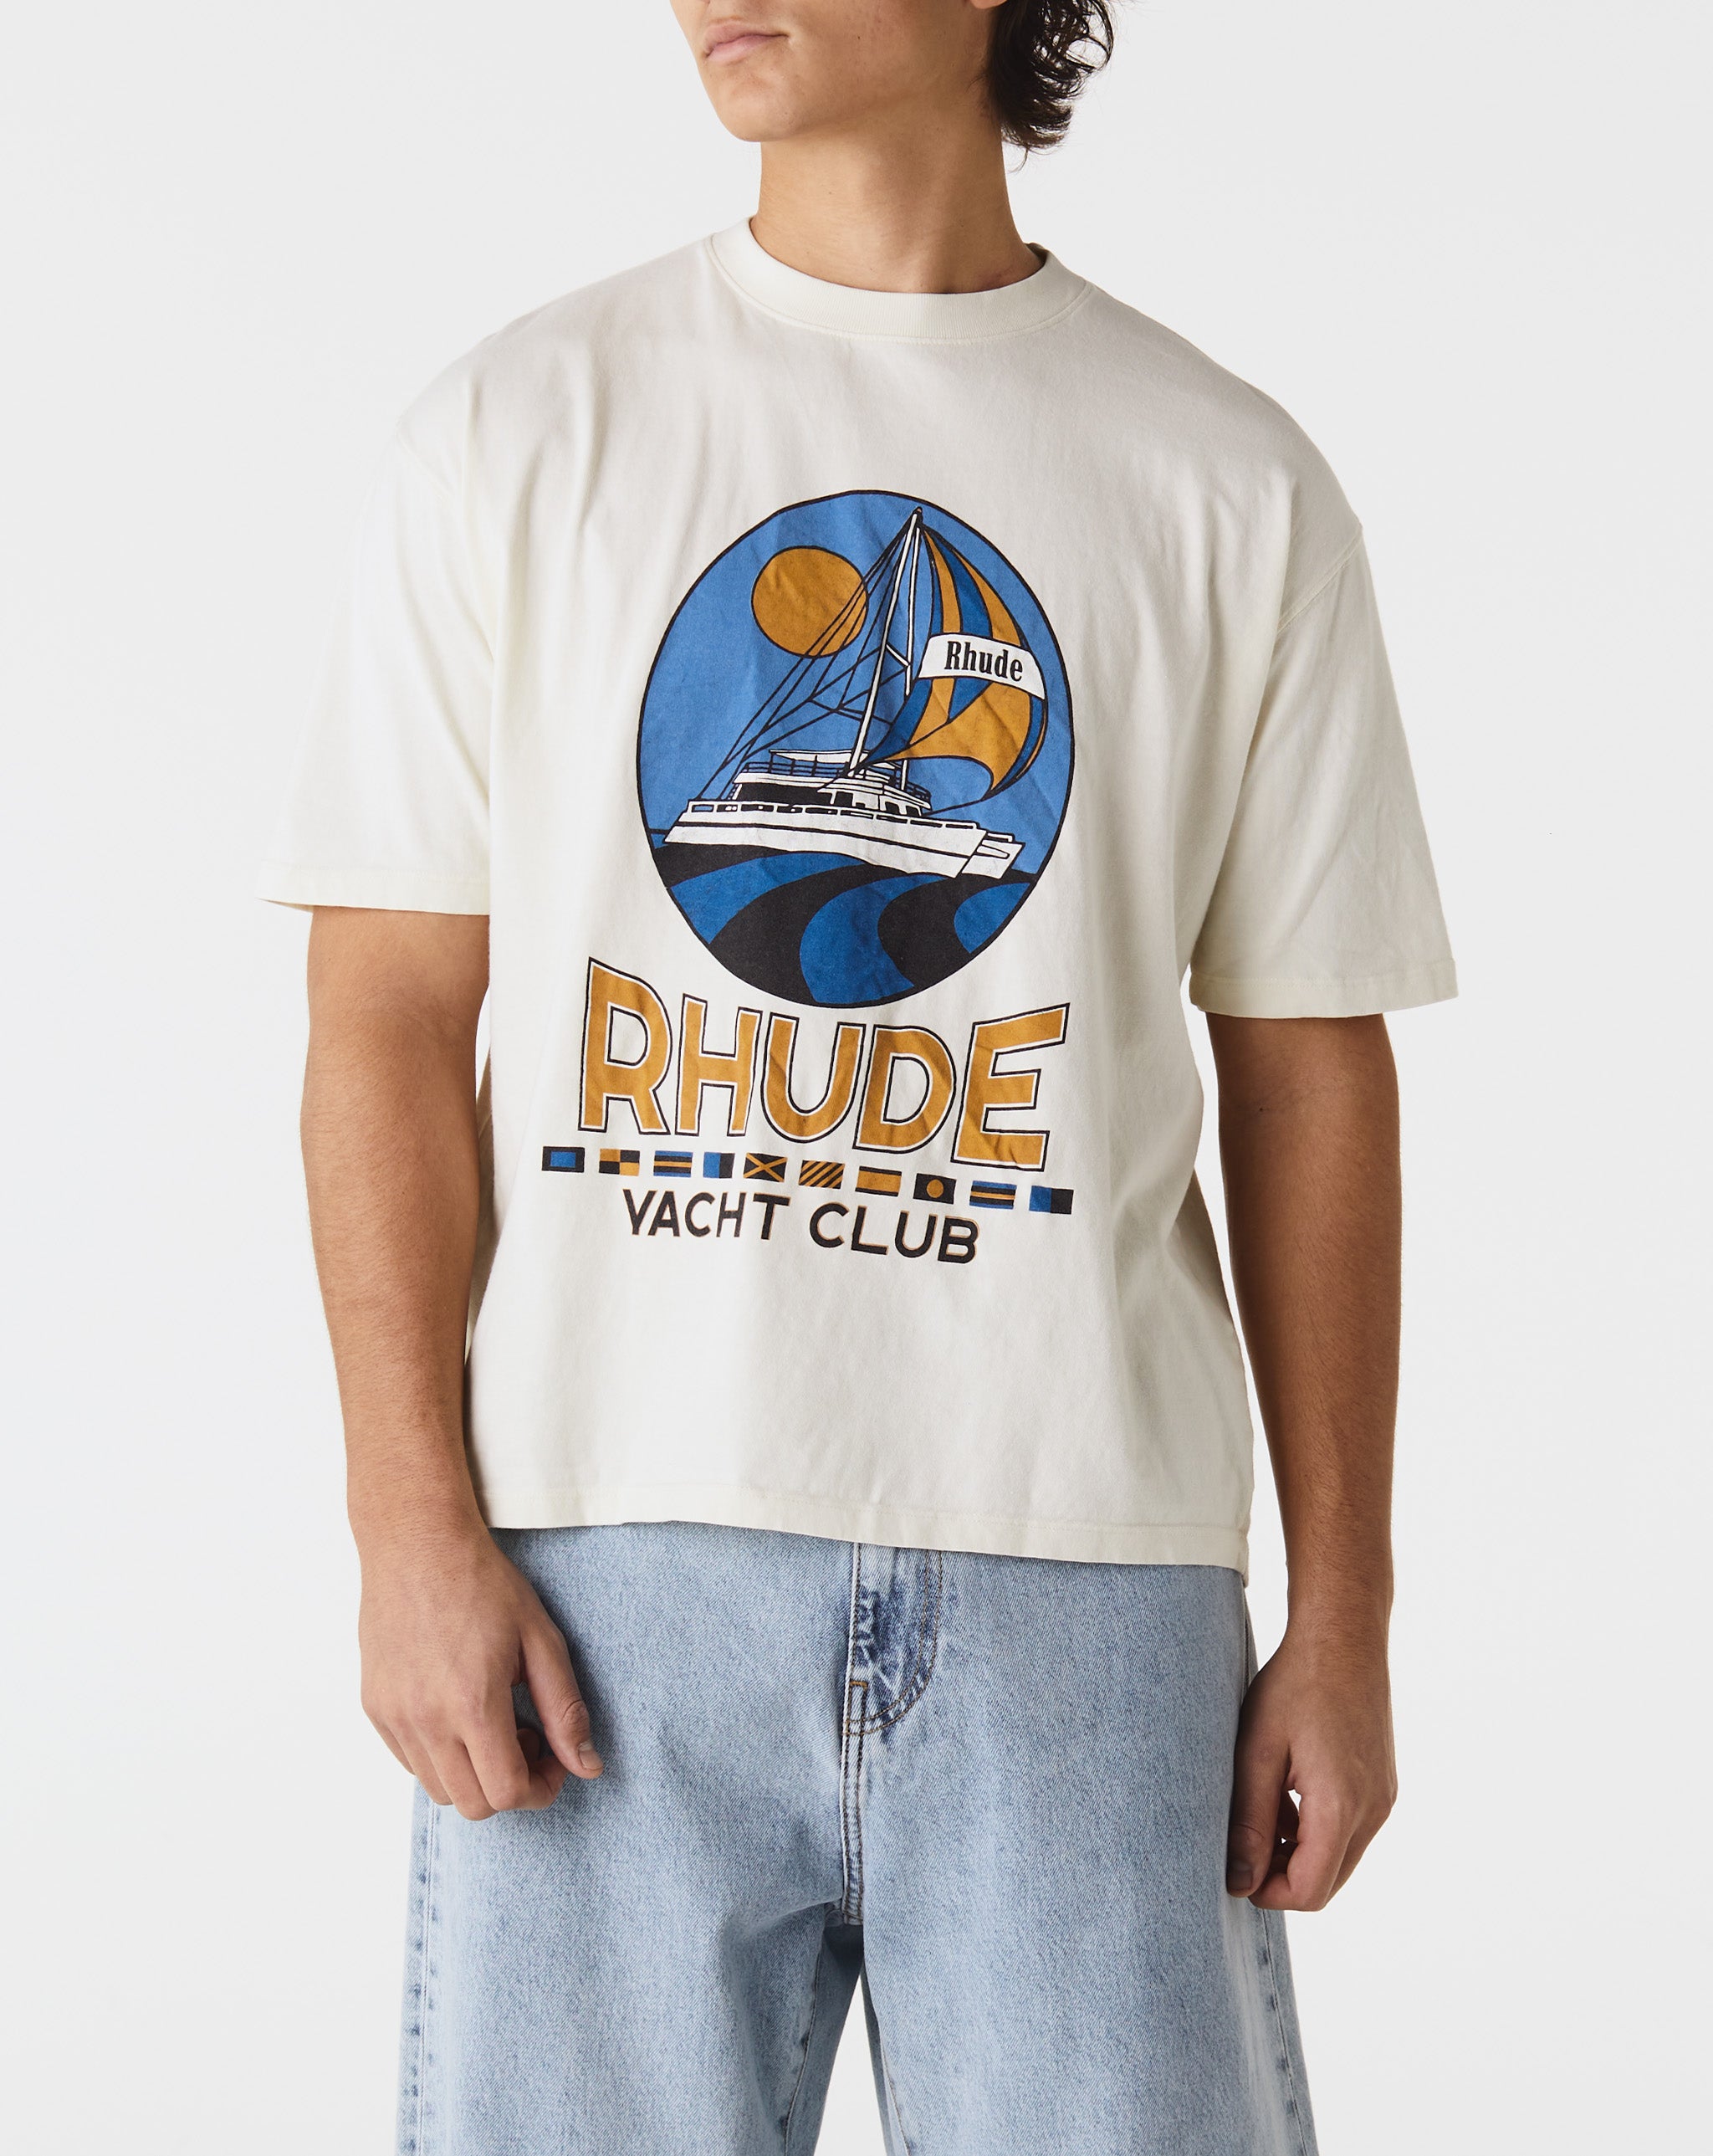 Rhude Cresta Cigar T-Shirt  - Cheap Urlfreeze Jordan outlet